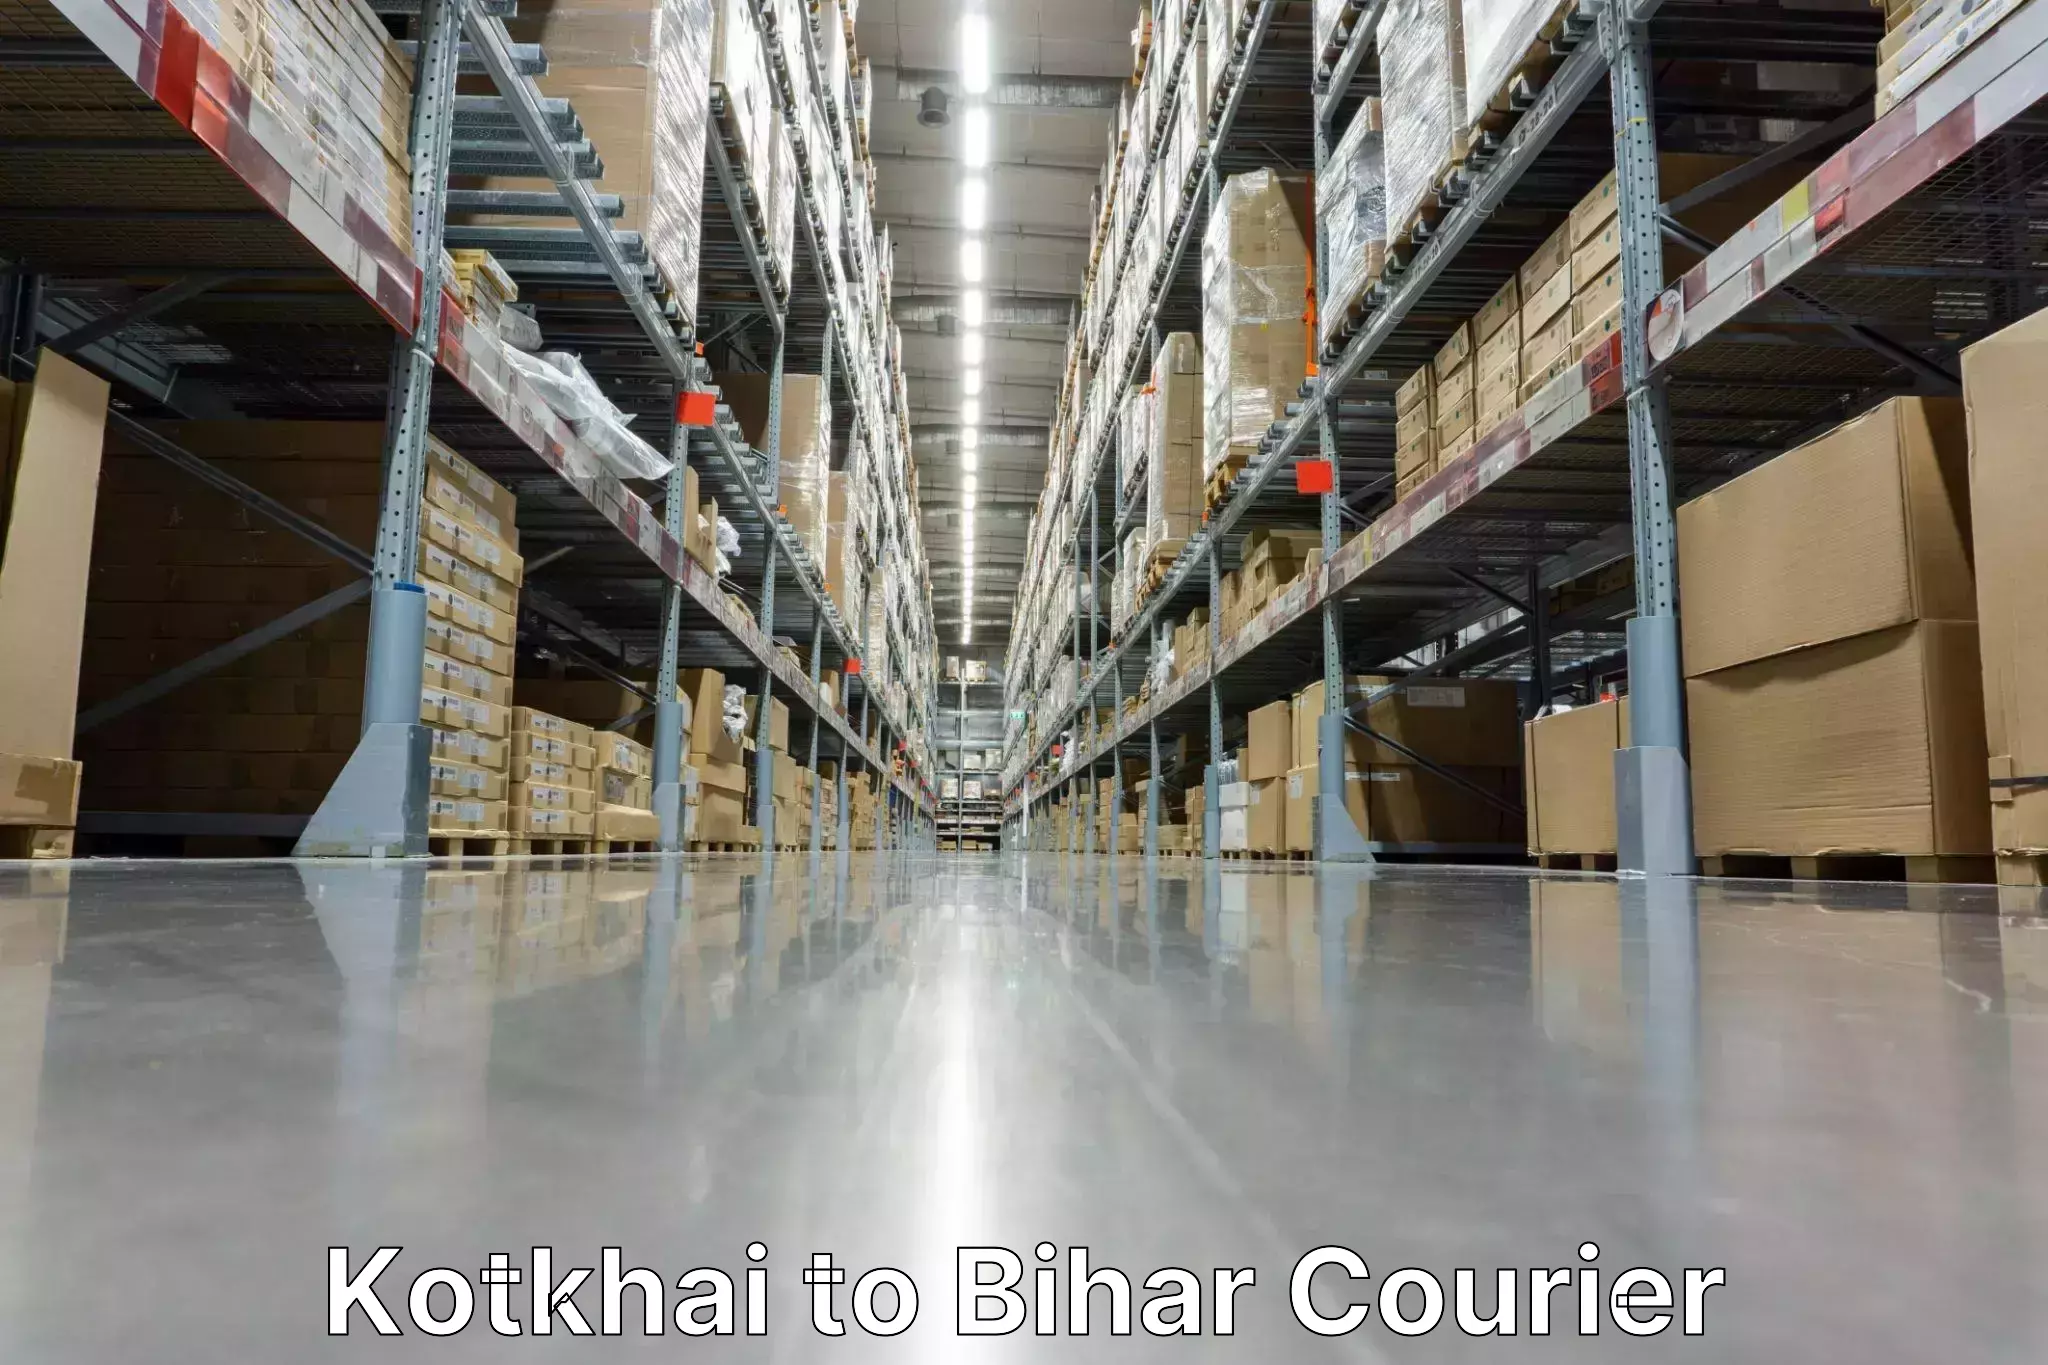 Express delivery network Kotkhai to Arrah